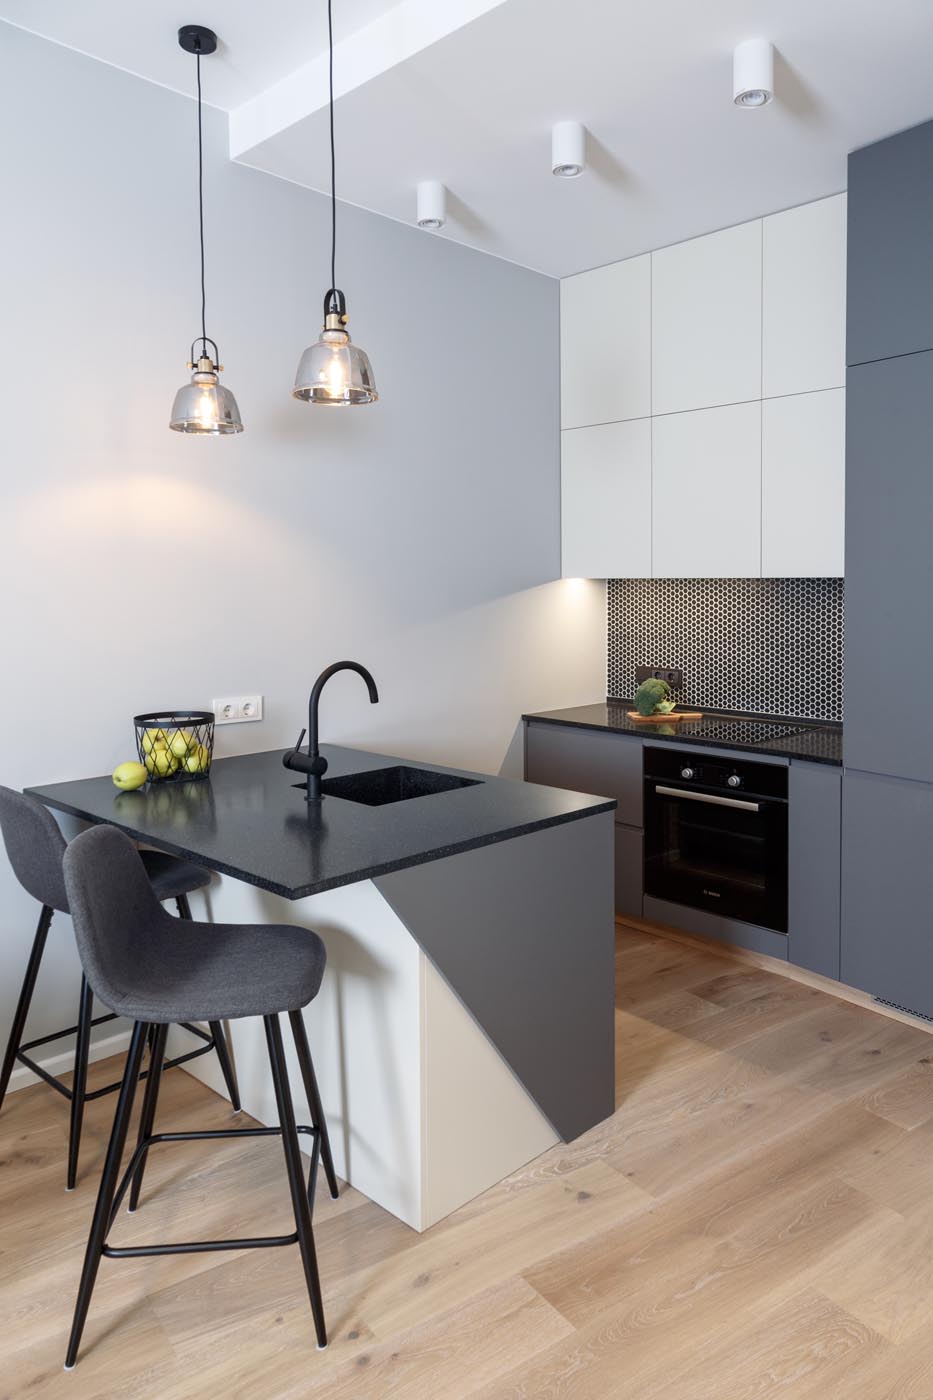 Lưu ý cách bố trí không gian khi thiết kế tủ bếp cho căn hộ chung cư